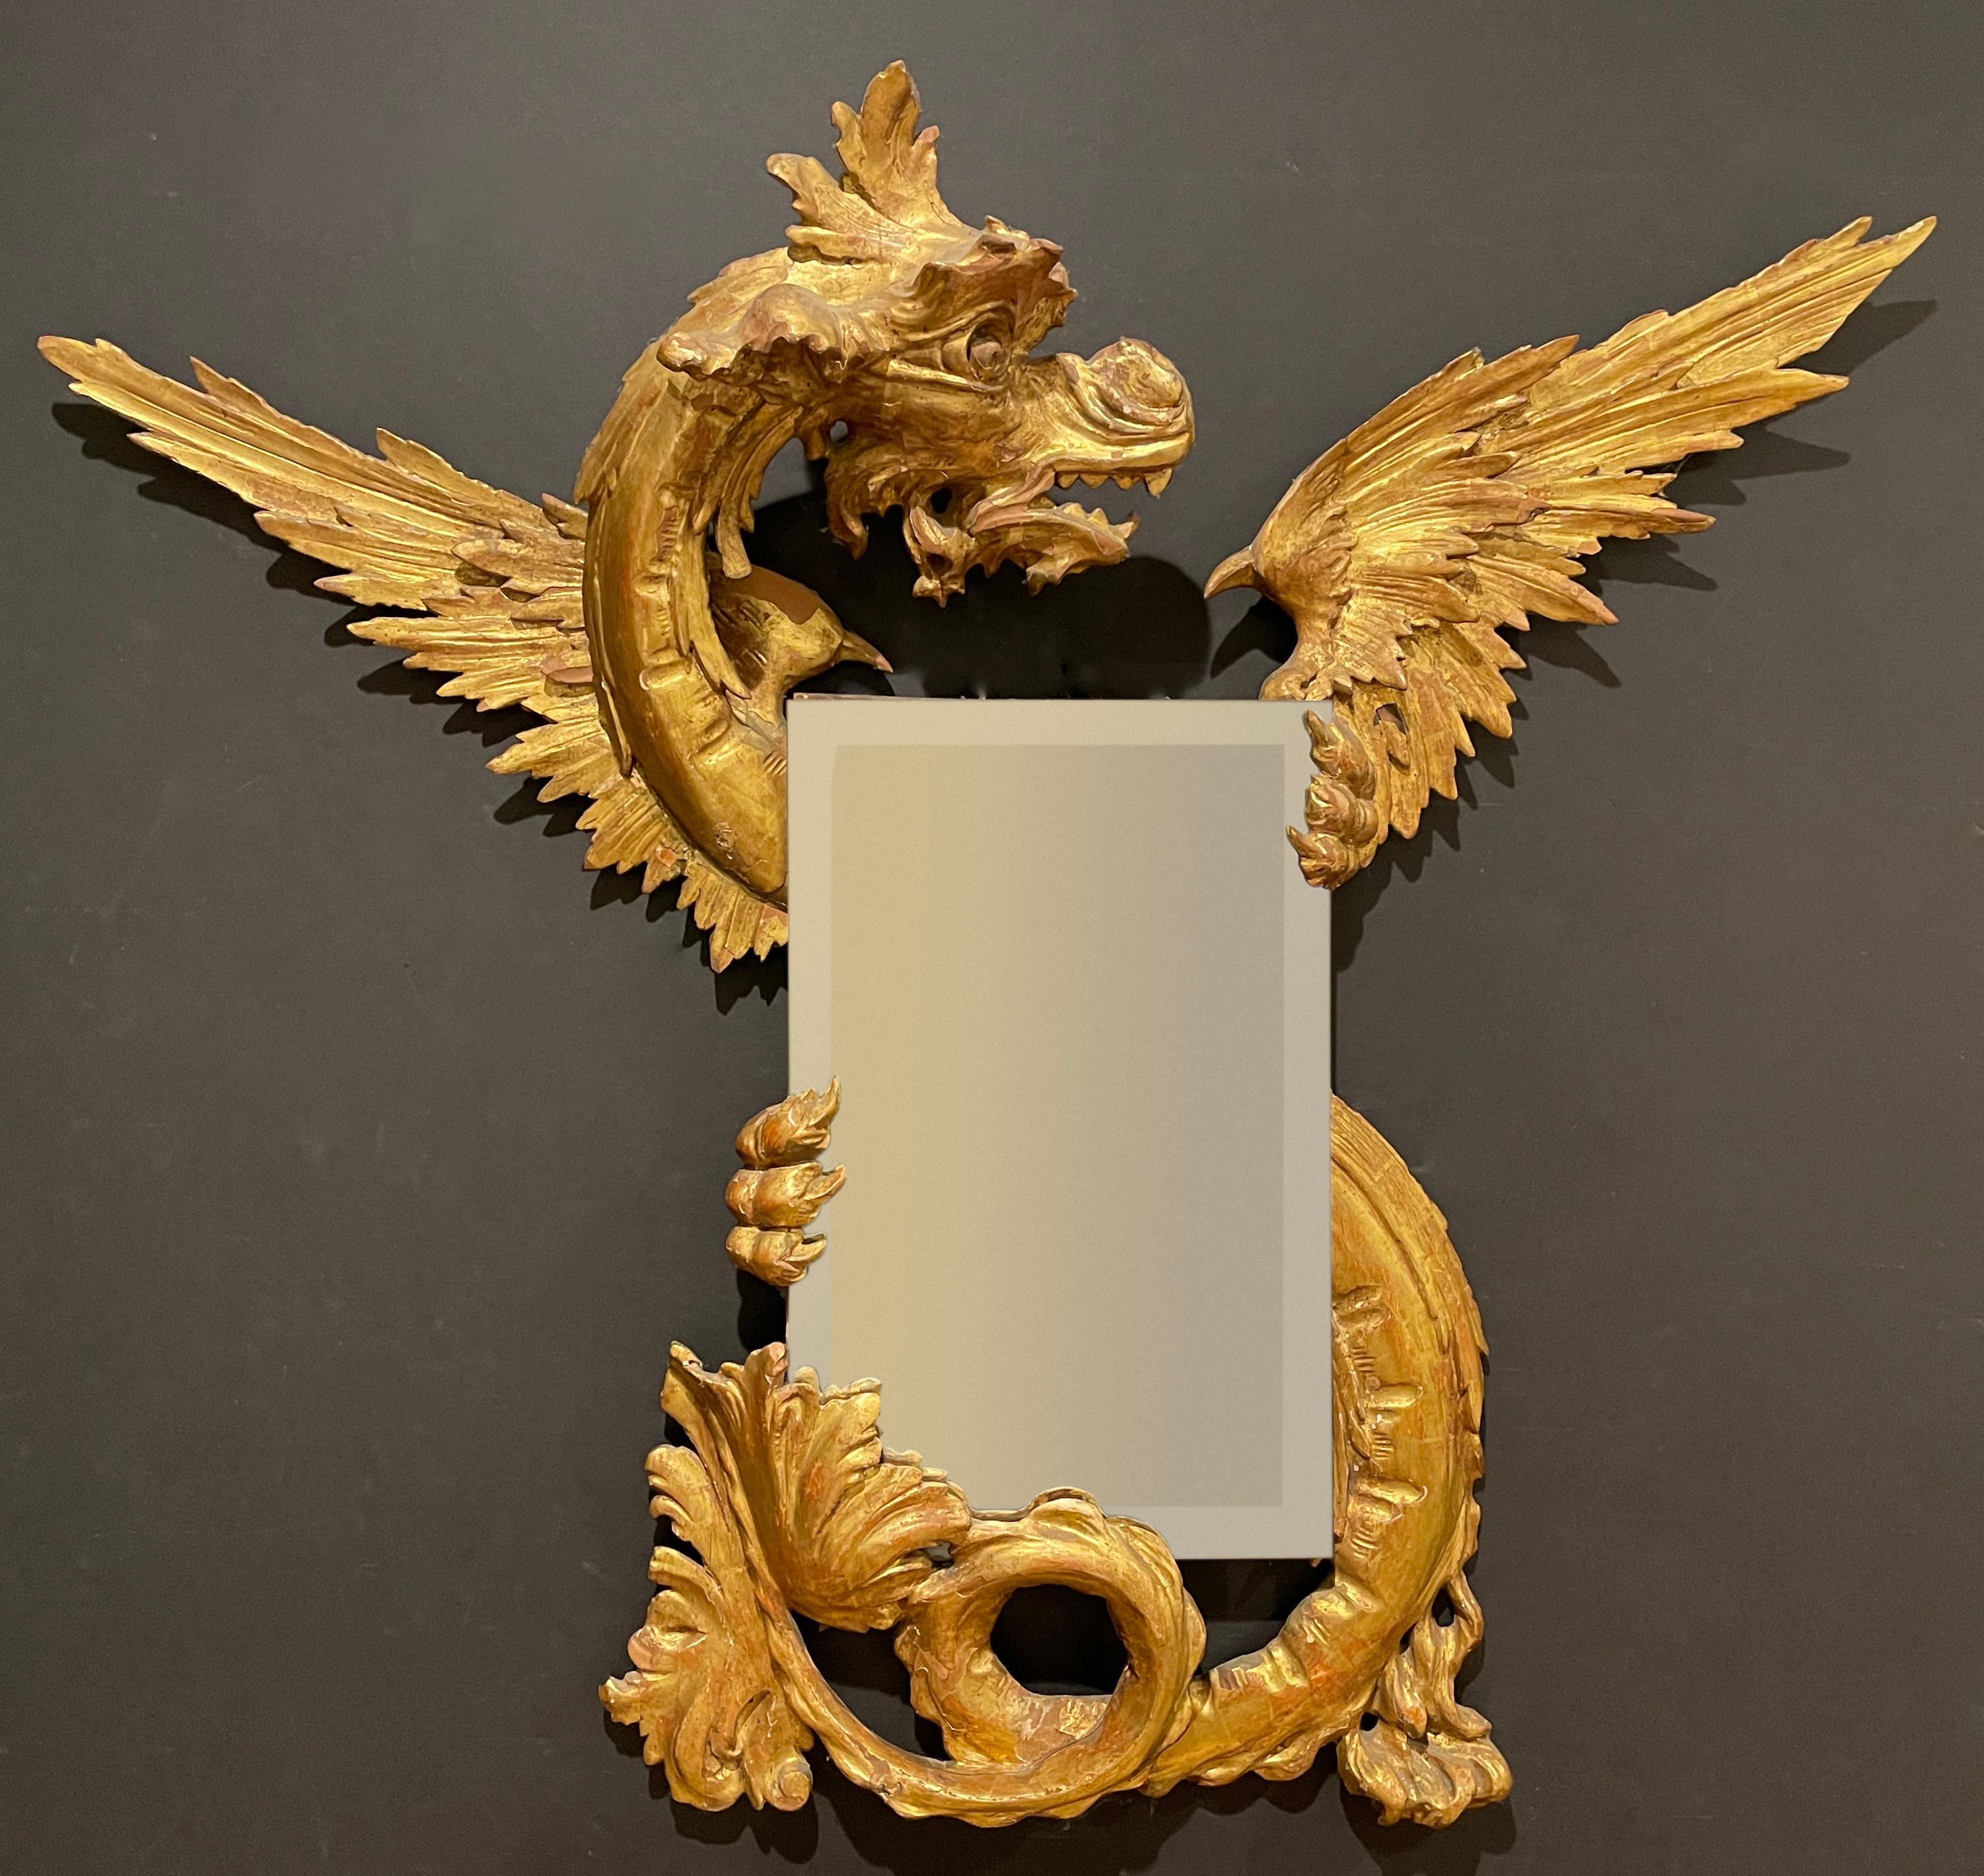 Miroir en forme de dragon merveilleusement sculpté et doré. Italie du Nord, 19e siècle, style Renaissance. Miroir biseauté tenu entre les mains/griffes et la queue
 